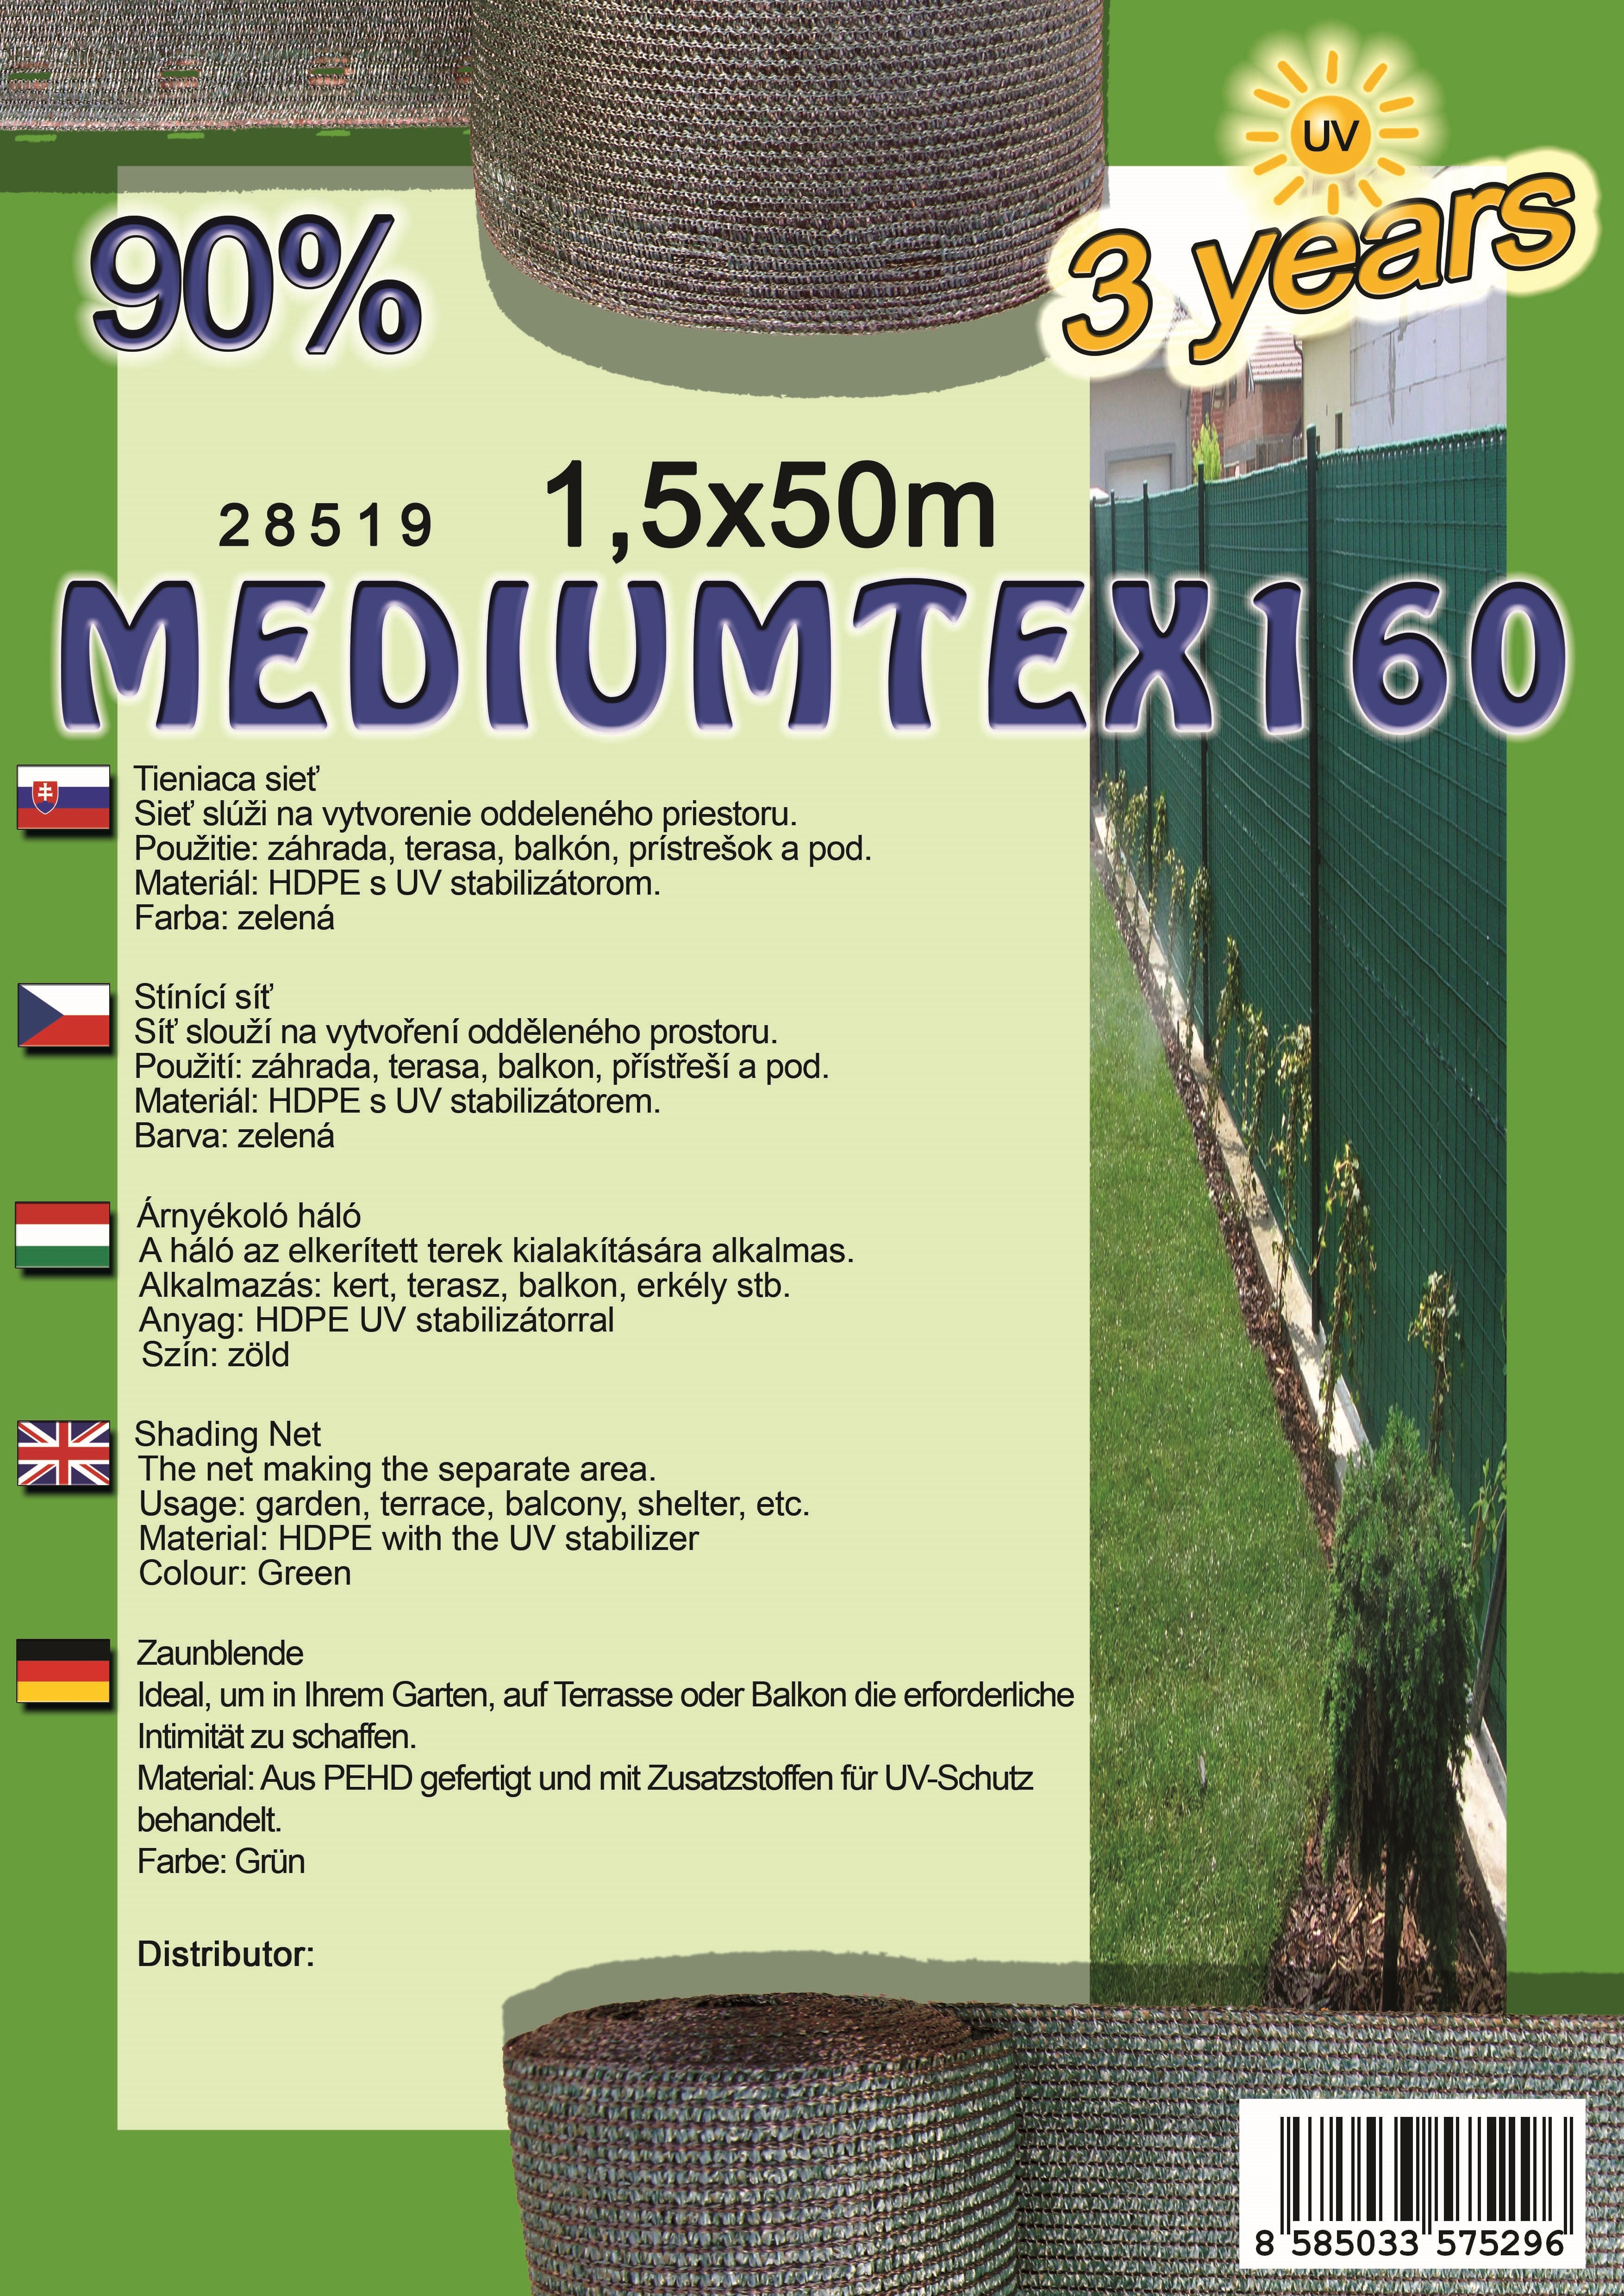 Tieniaca sieť MEDIUMTEX160 1,5X50 m zelená 90%